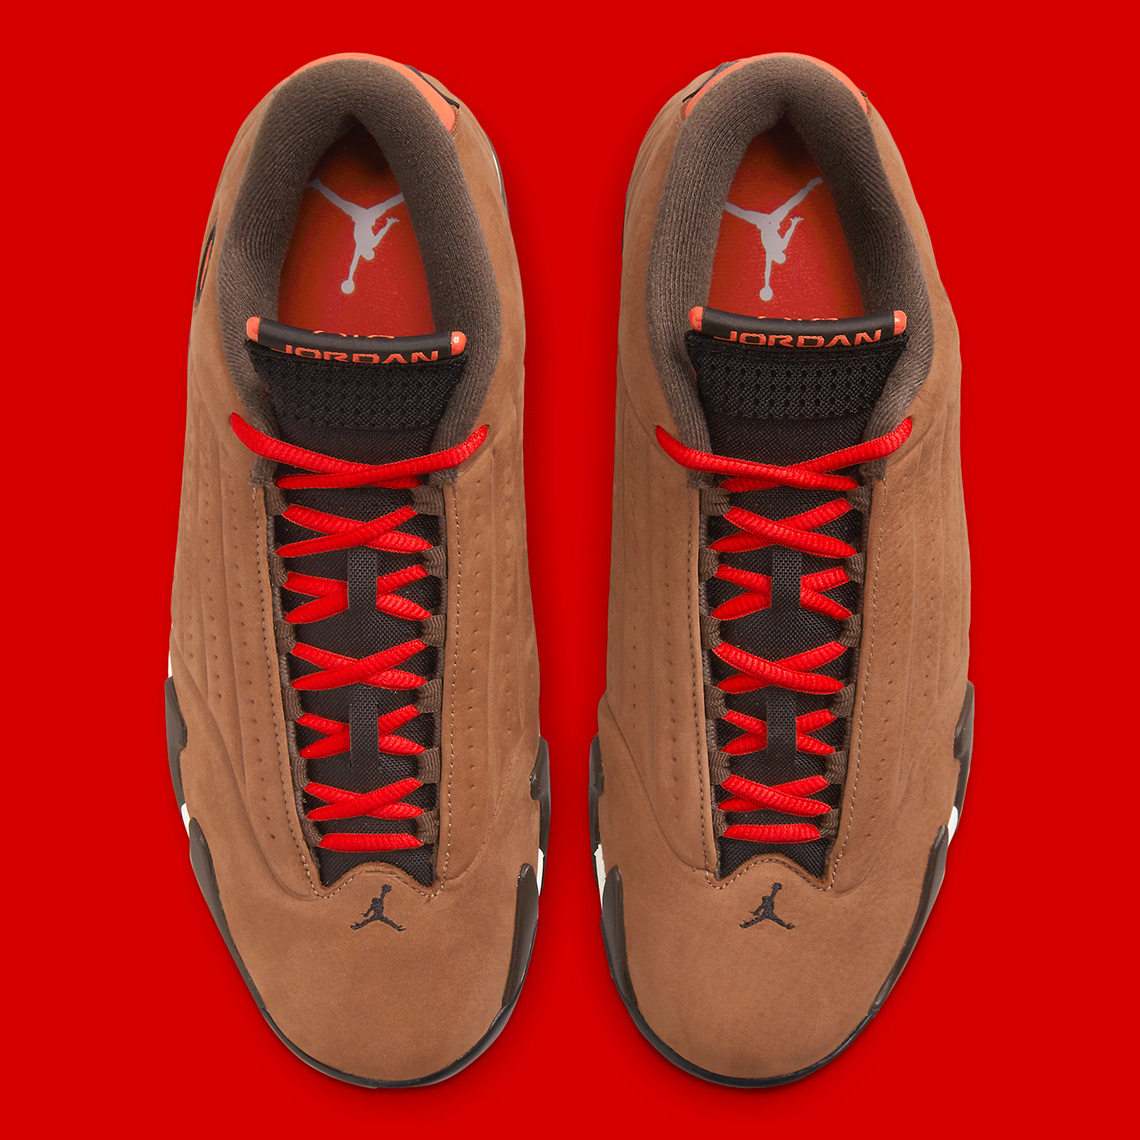 Nike Jordan AJ6 Hoodie met print en tie-dye in rood Toe Do9406 200 2